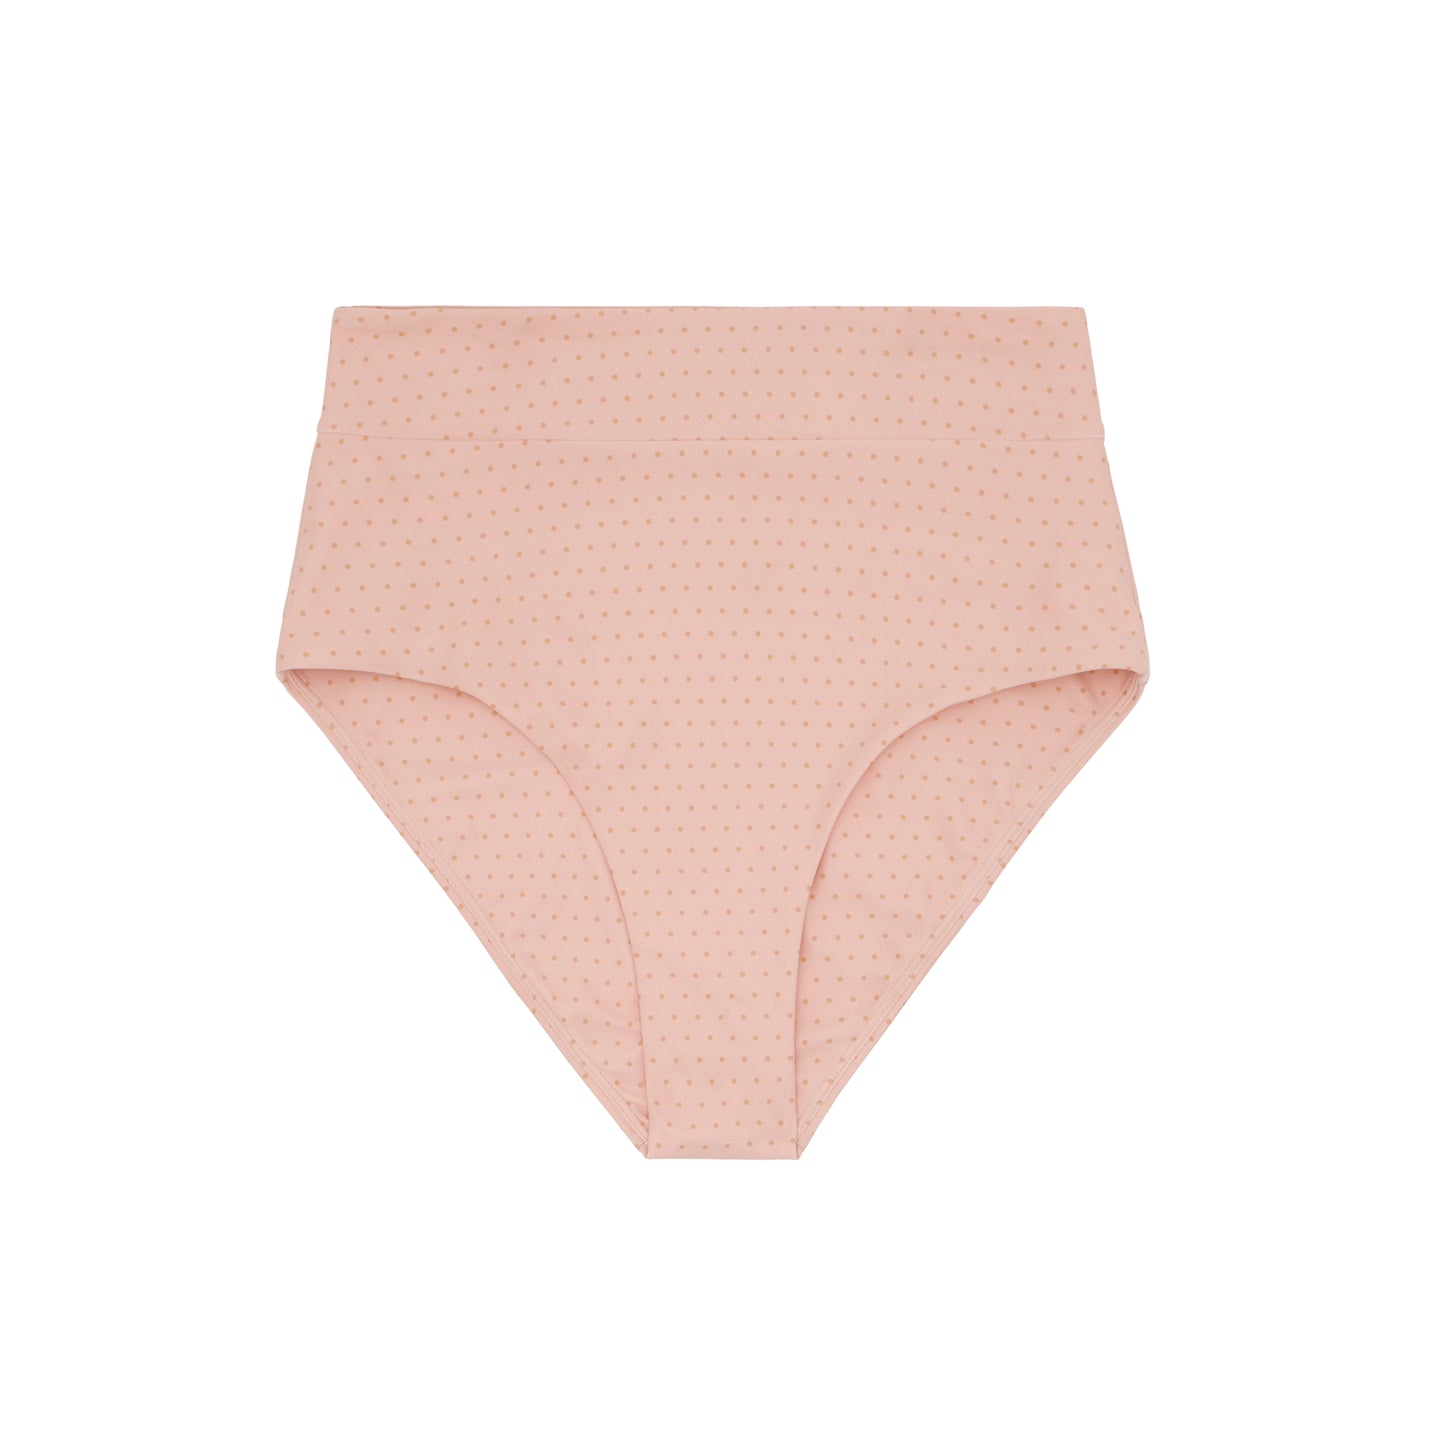 Swimwear- High Waisted Bikini Bottom